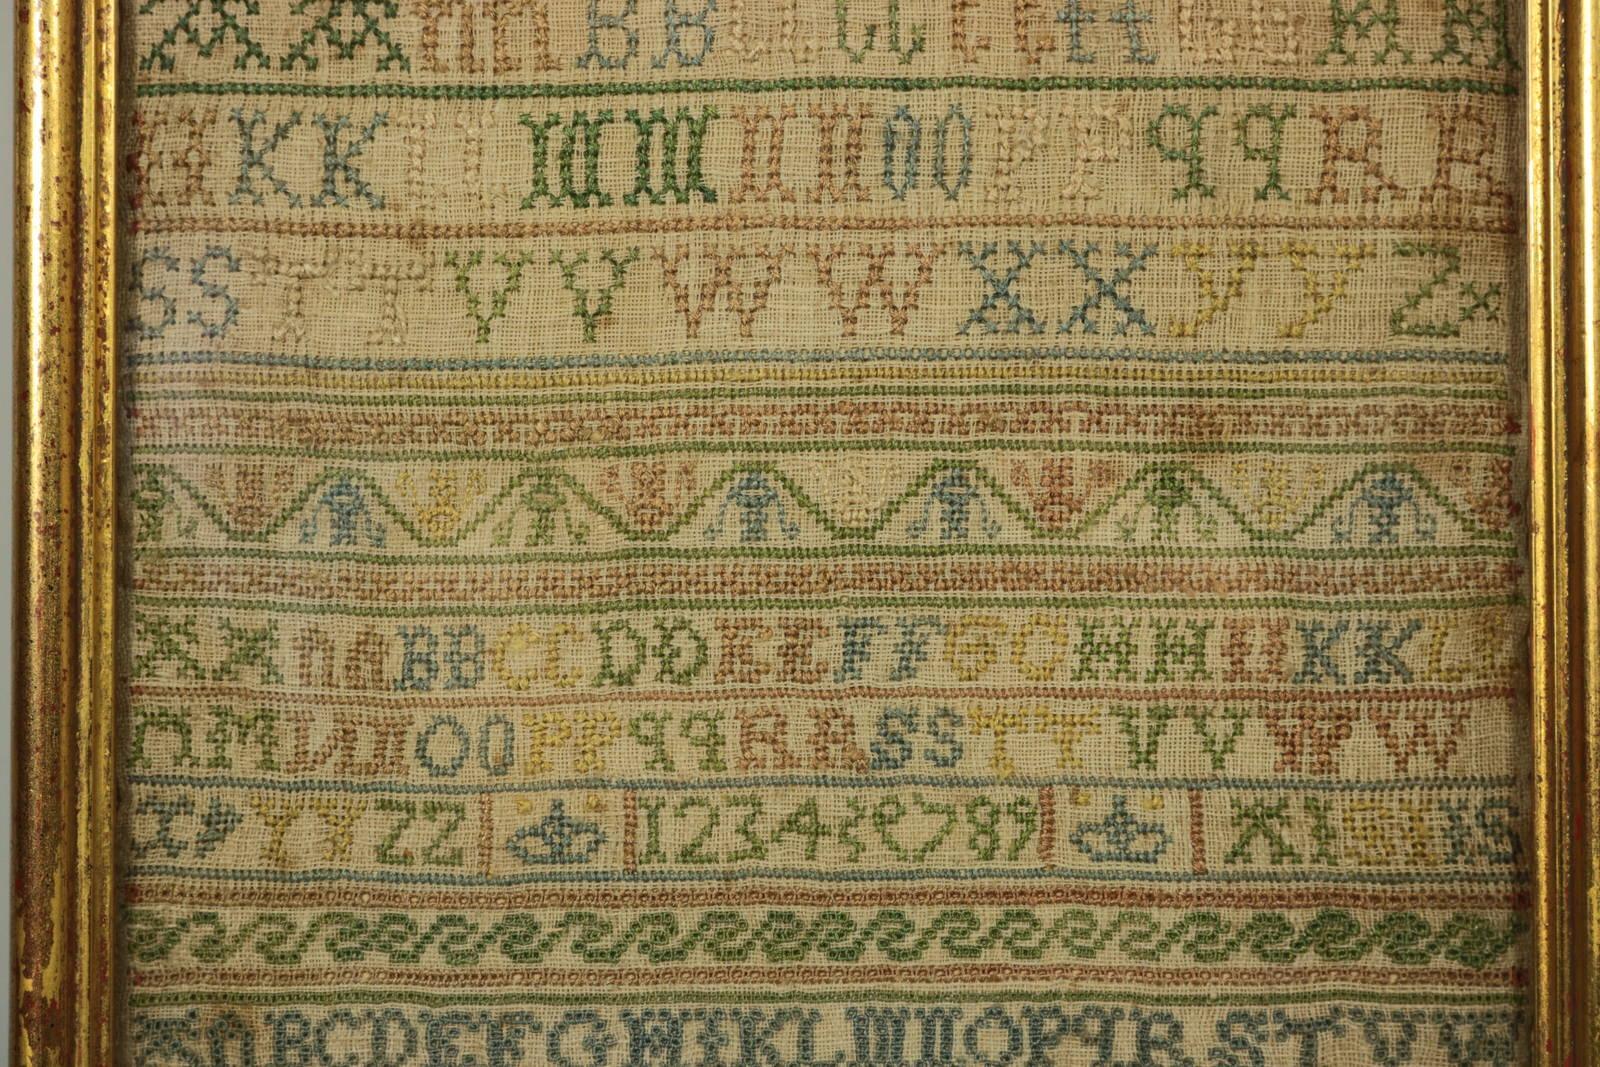 Folk Art Antique Sampler, 1721 Alphabet Sampler by Judeth Skinner